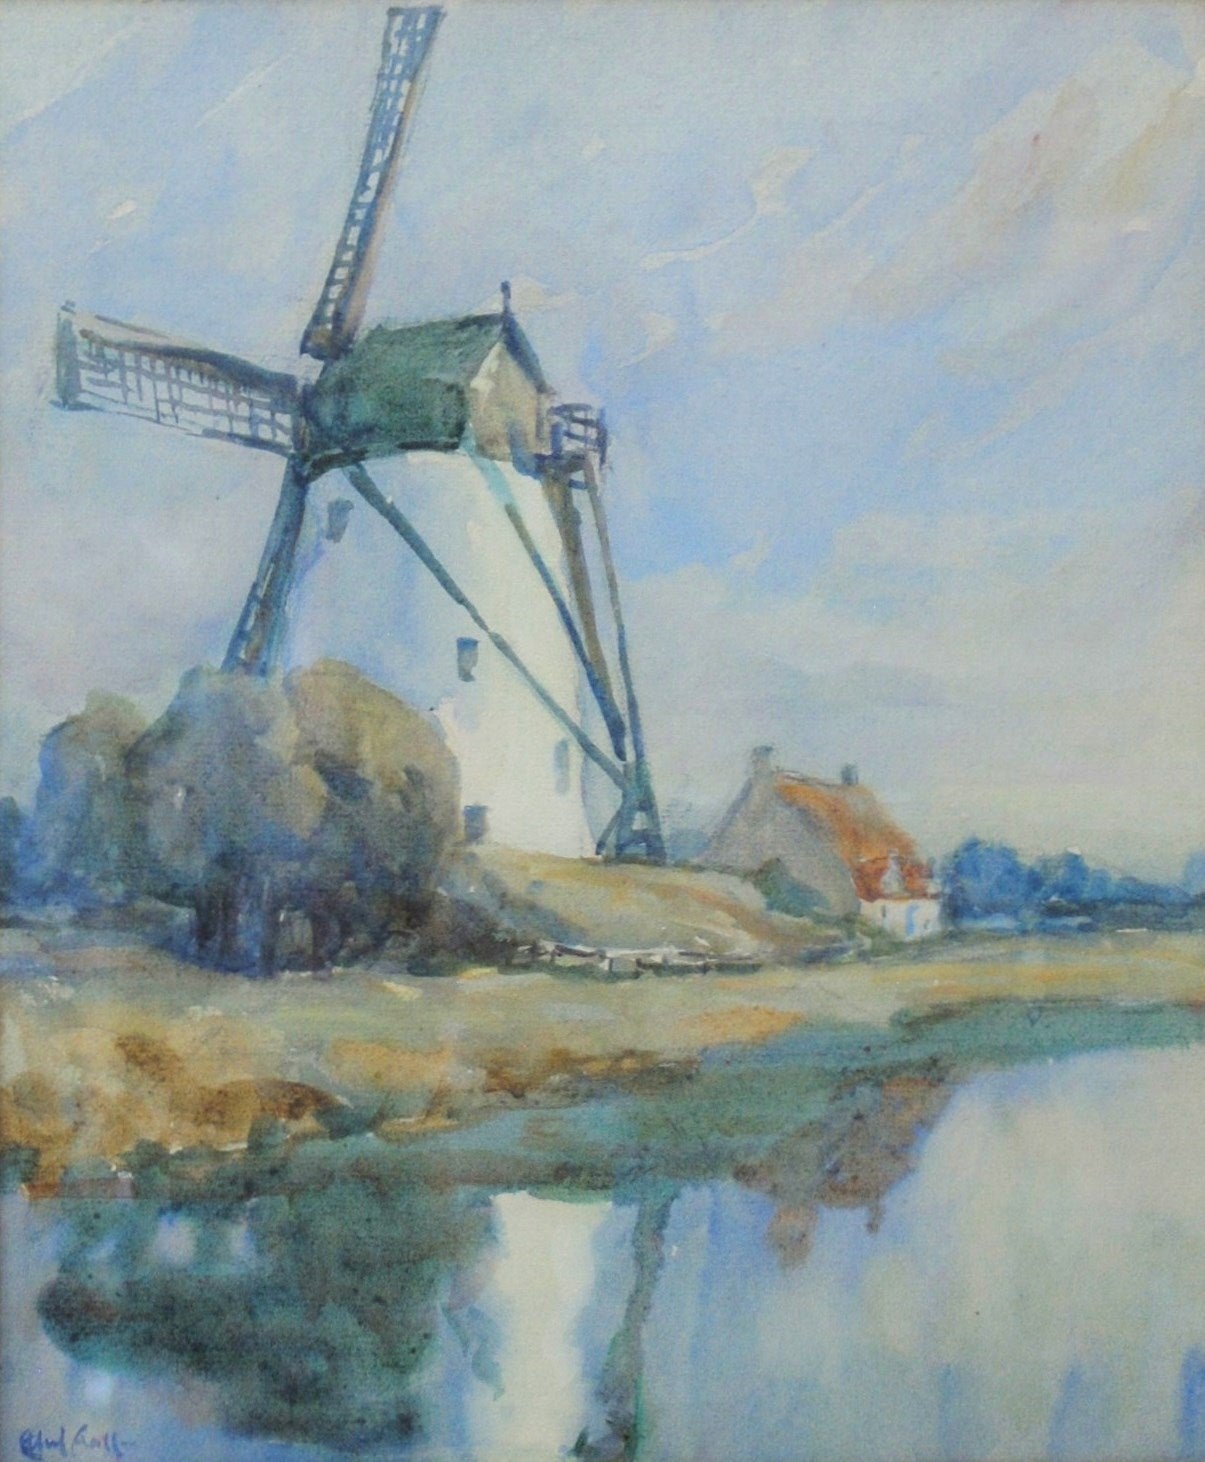 Ethel Hall Landscape Art - Old Mill at Damme, Bruges